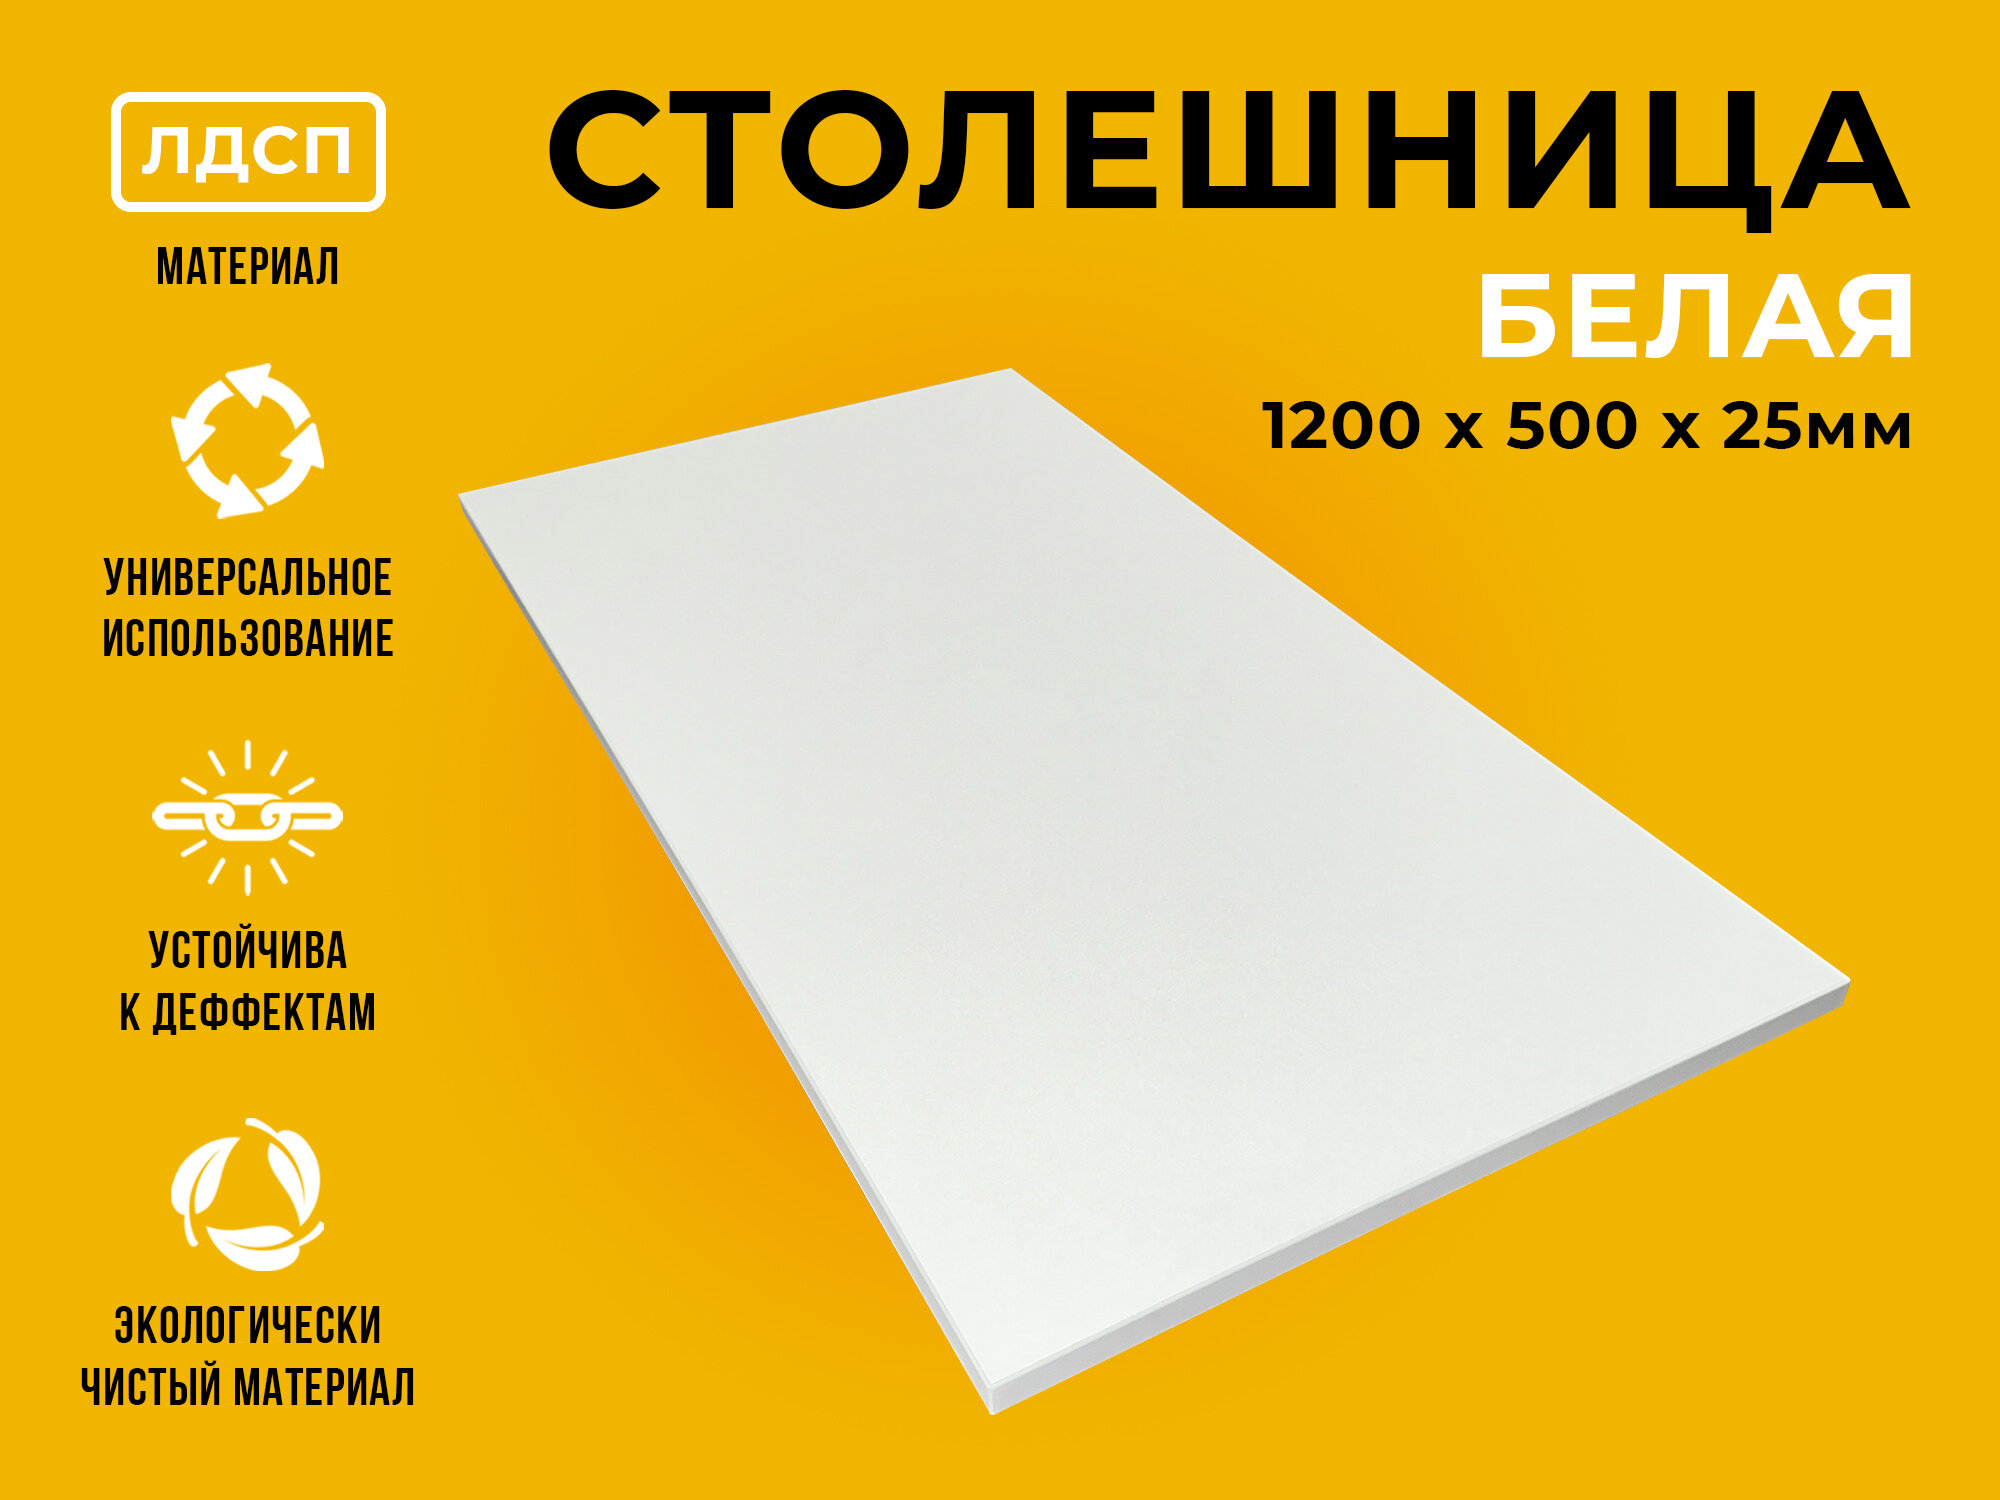 Столешница из ЛДСП 120х50х2,5 см, белый цвет, прямоугольная форма, 1 штука